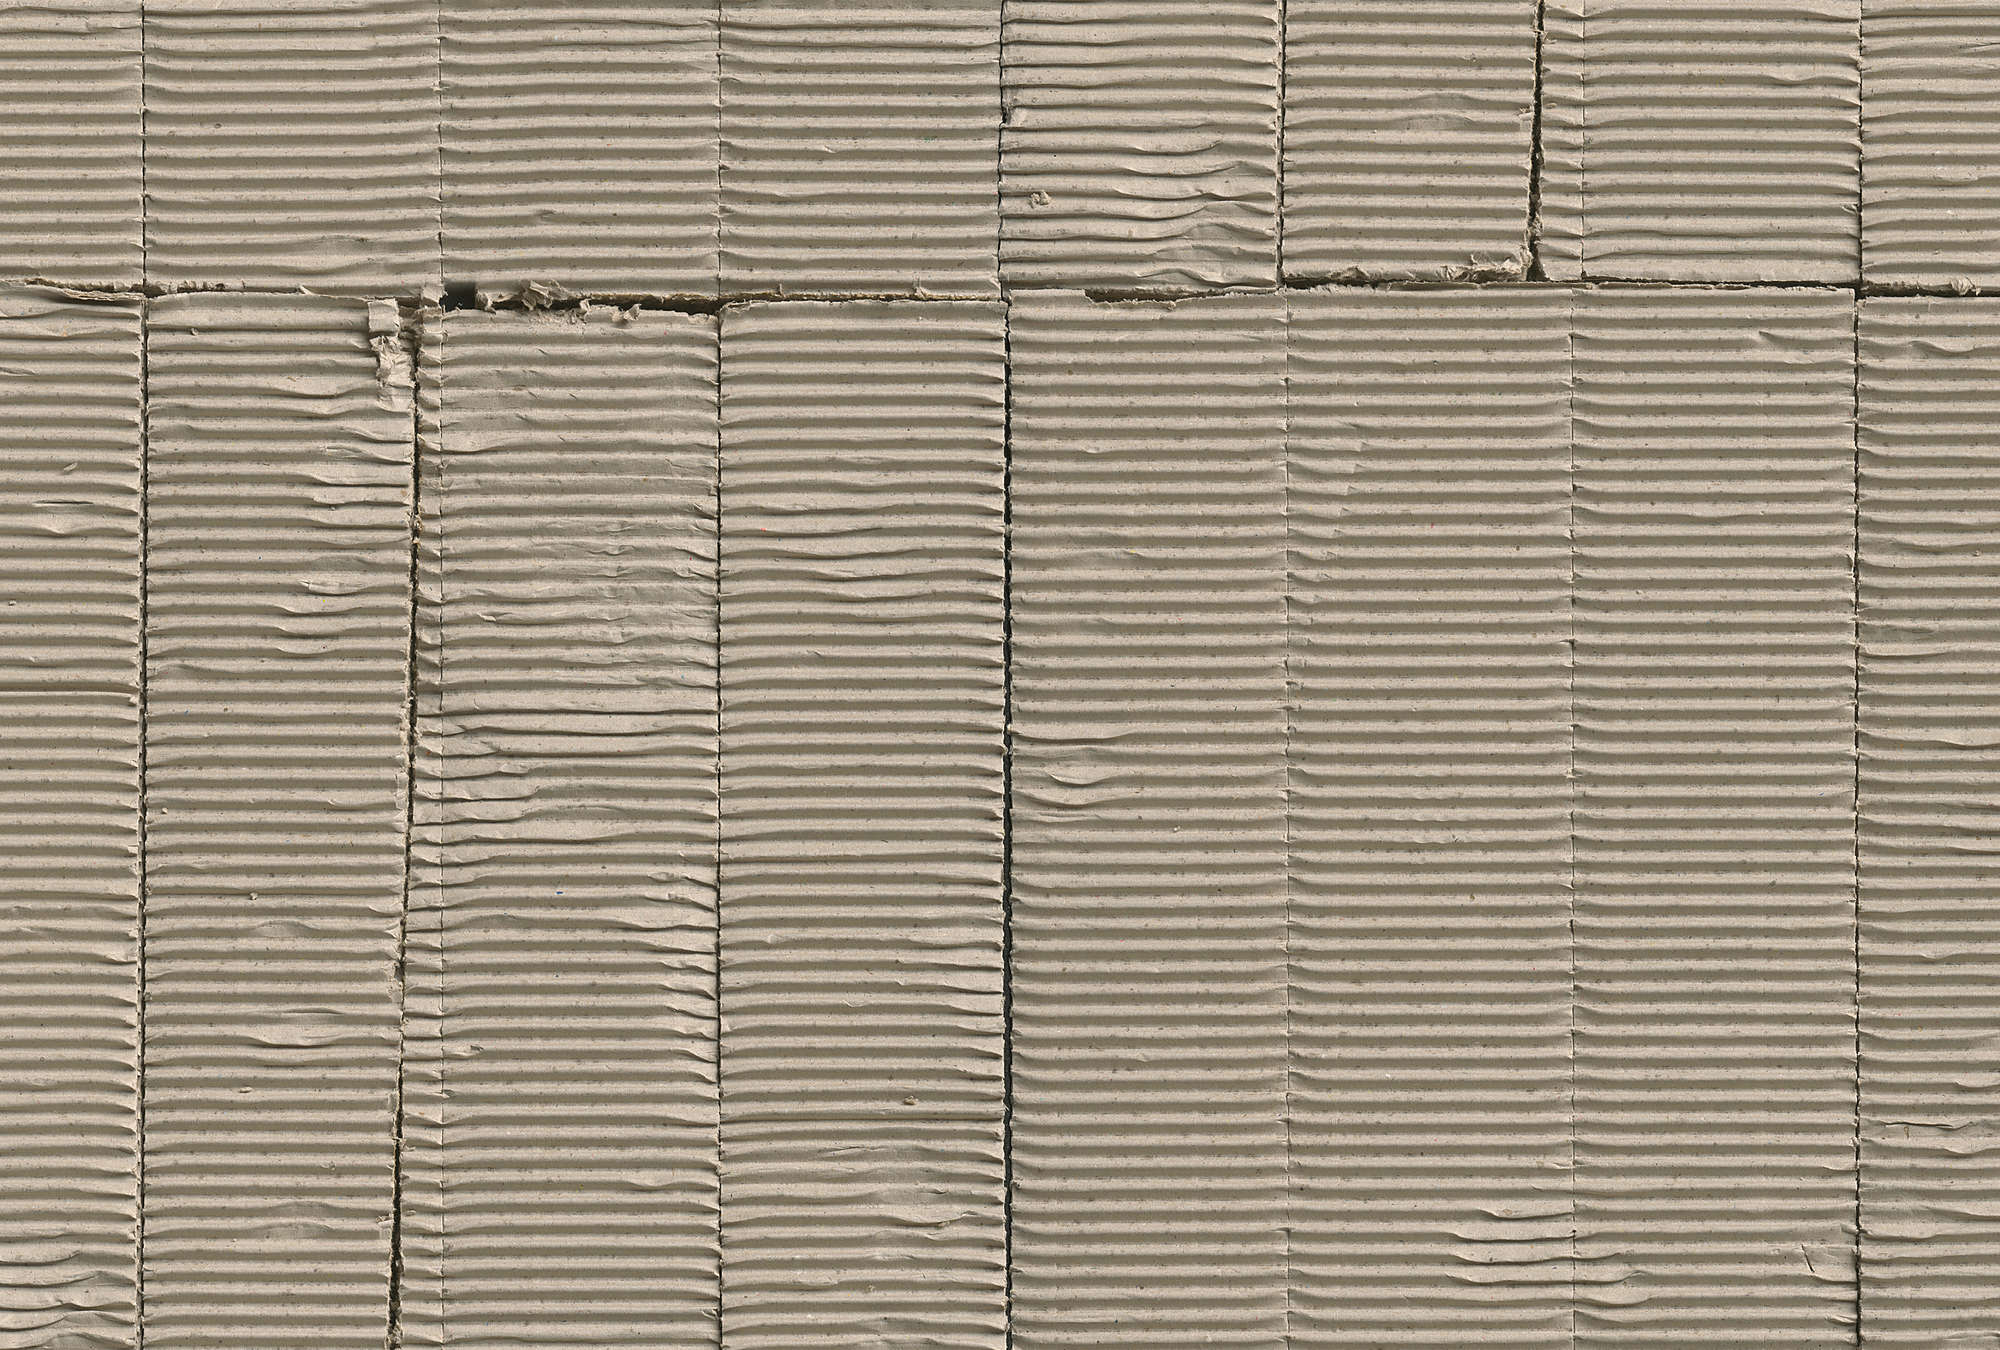             Patrones de cartón ondulado usados como papel pintado
        